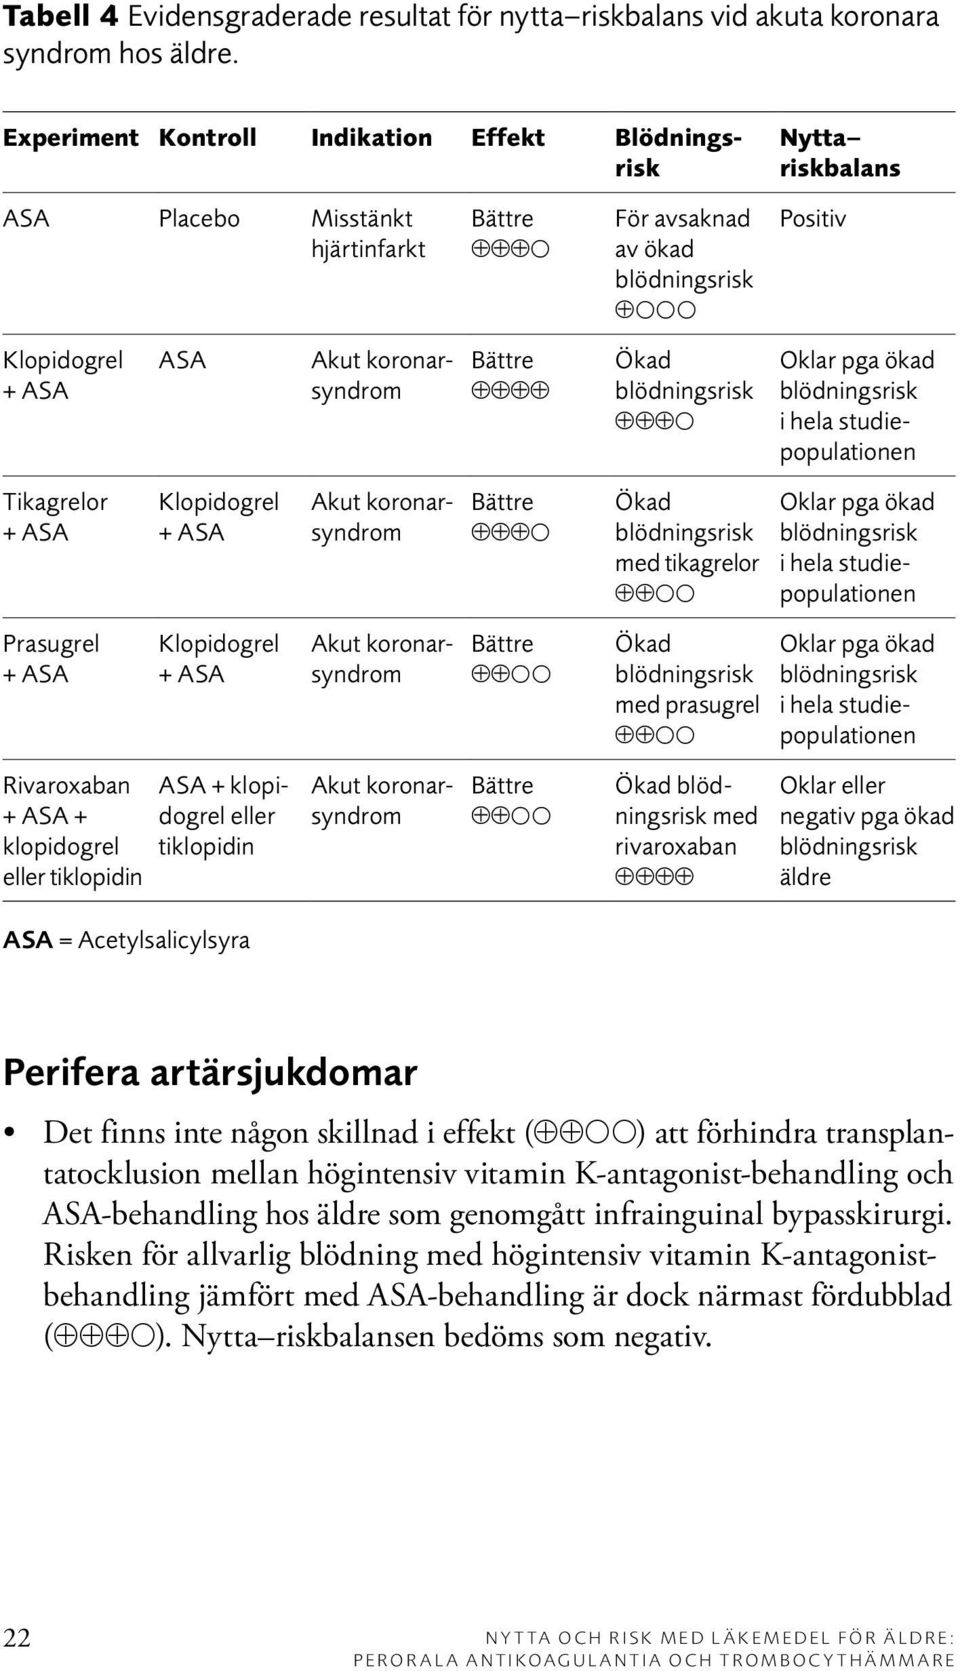 hela studiepopulationen Tikagrelor + ASA Klopidogrel + ASA Akut koronarsyndrom med tikagrelor ðð Oklar pga ökad i hela studiepopulationen Prasugrel + ASA Klopidogrel + ASA Akut koronarsyndrom ðð med